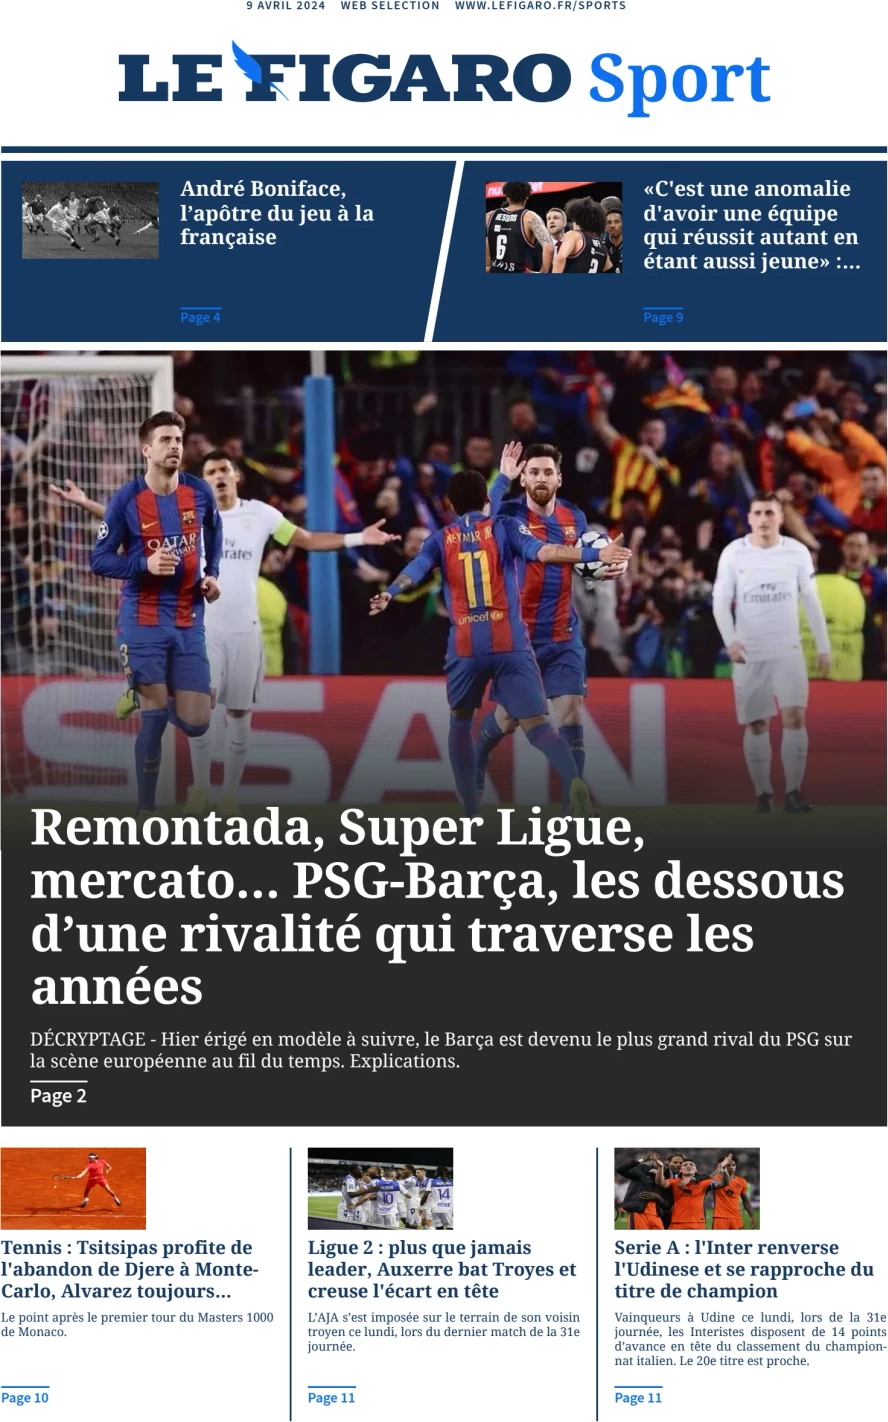 prima pagina - Le Figaro SPORT del 09/04/2024